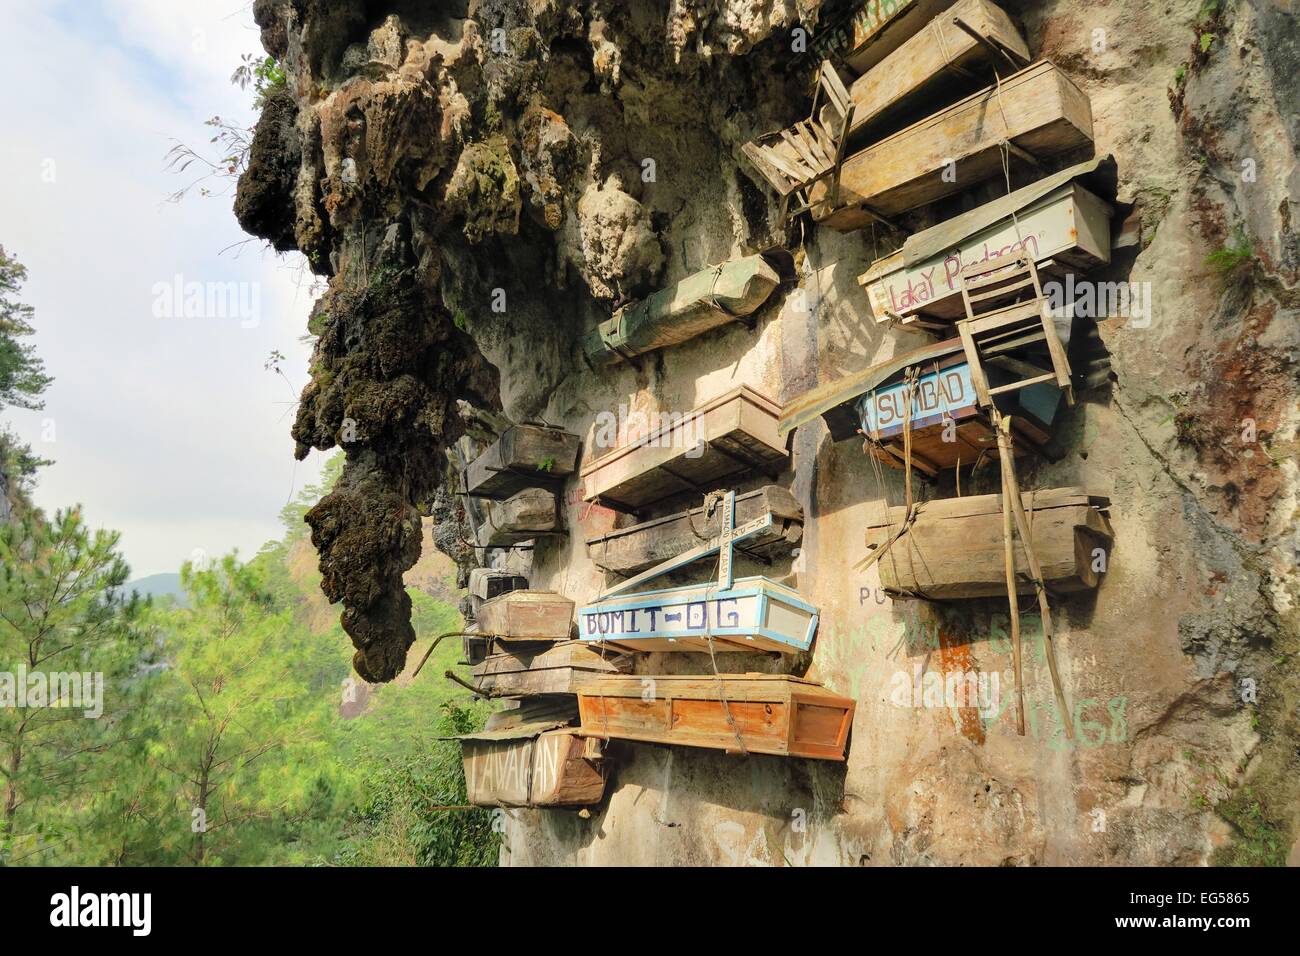 Philippinos nella regione di montagna di Sagada utilizzato per appendere le bare con i loro morti in giù una scogliera come una sepoltura tradizione in Val di eco Foto Stock